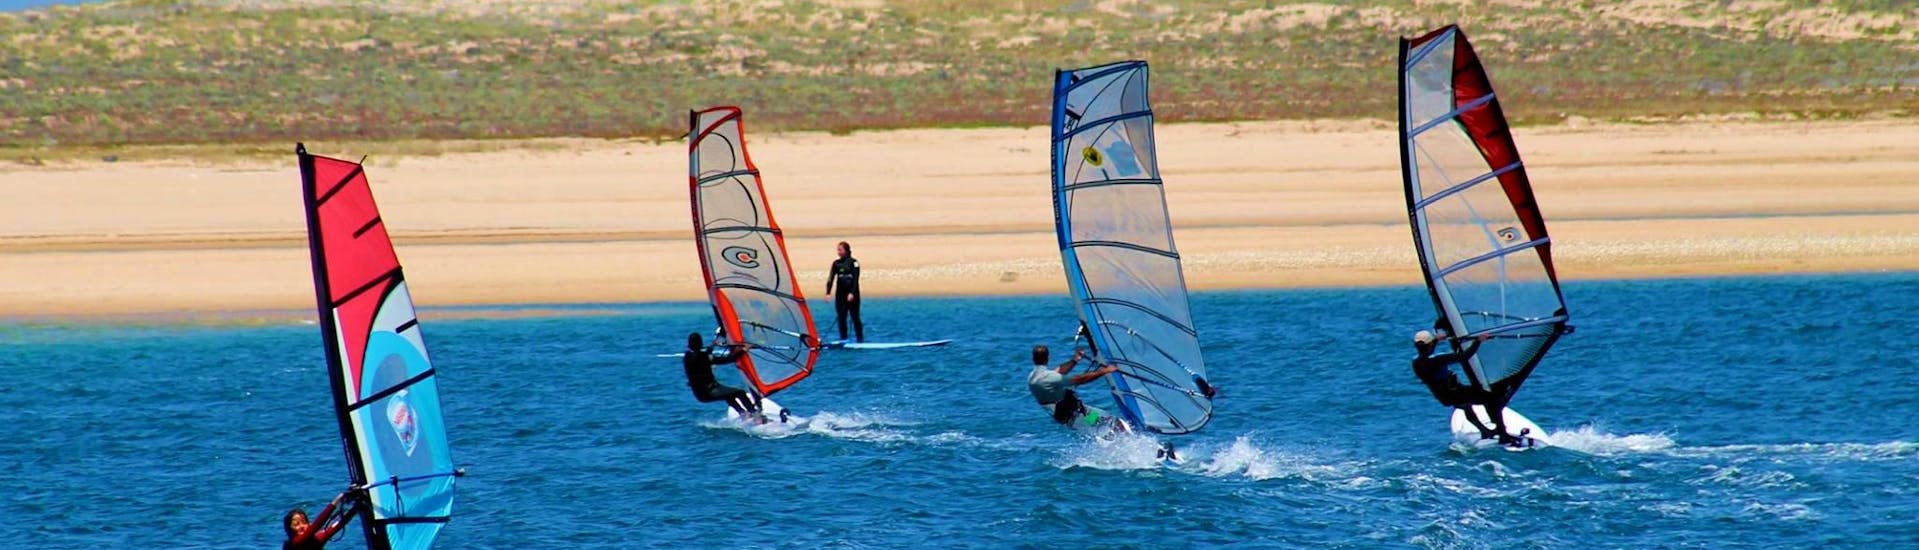 Lezioni private di windsurf a Sesimbra da 7 anni.